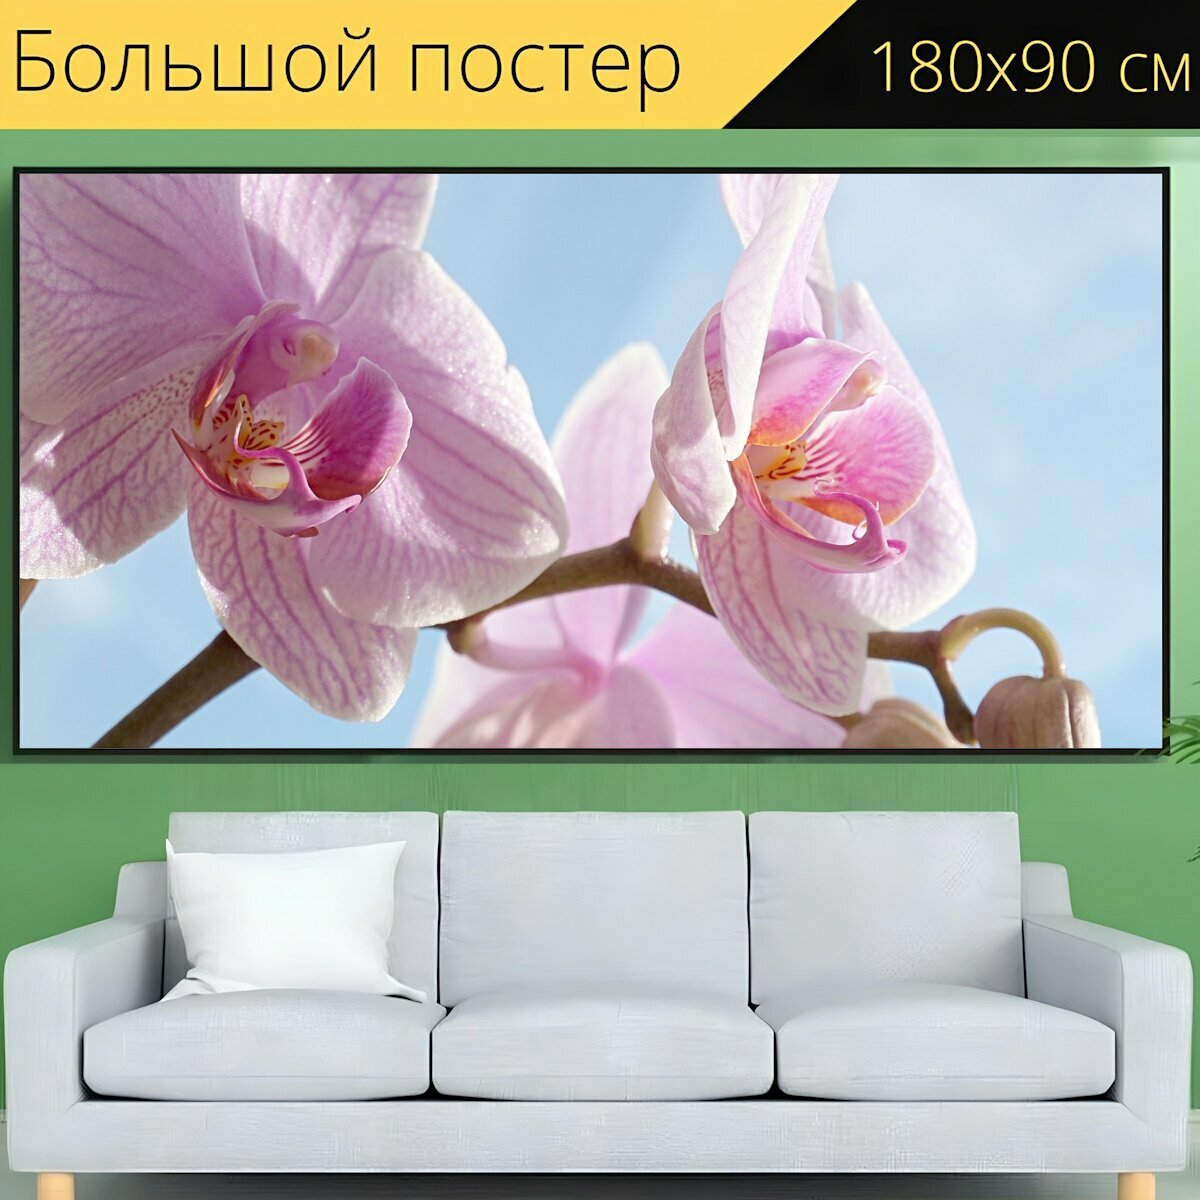 Большой постер "Орхидея, розовый, цвести" 180 x 90 см. для интерьера